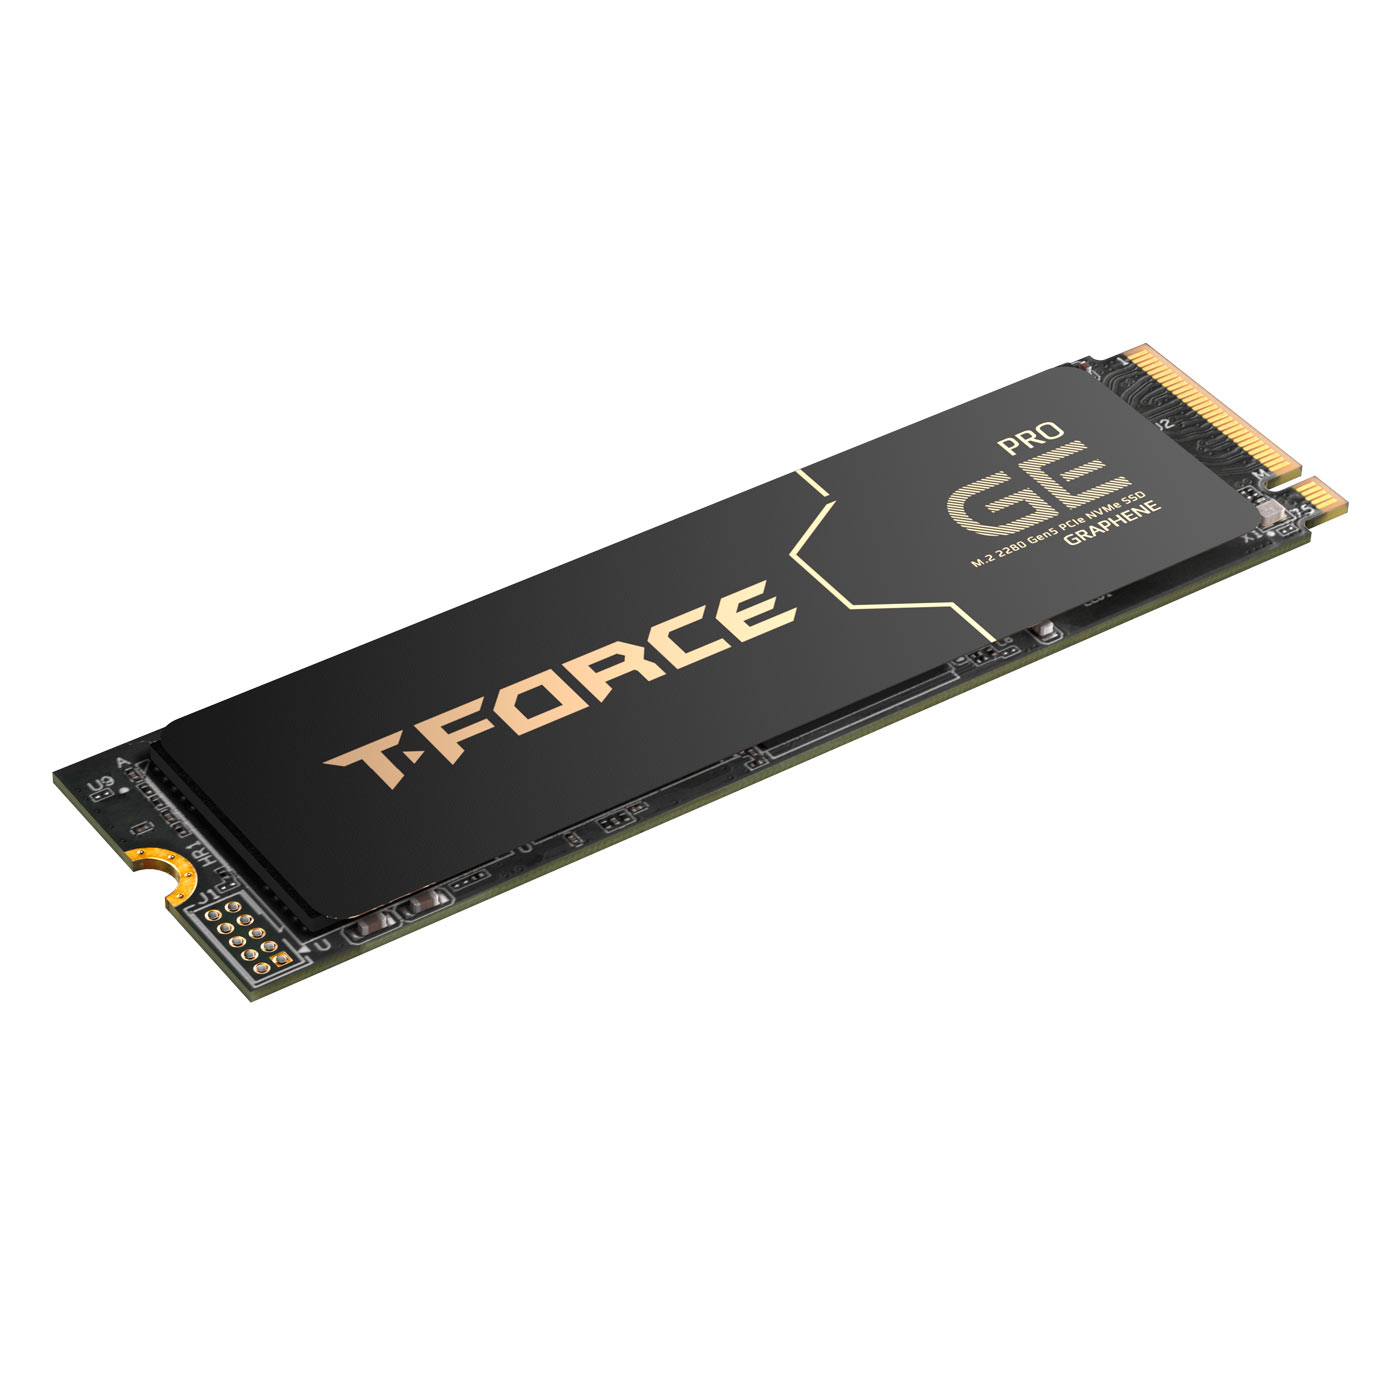 Immagine pubblicata in relazione al seguente contenuto: Team Group annuncia la linea di drive SSD NVMe M.2 PCIe 5.0 T-Force GE PRO | Nome immagine: news35252_Team-Group_T-Force-GE-PRO_2.jpg